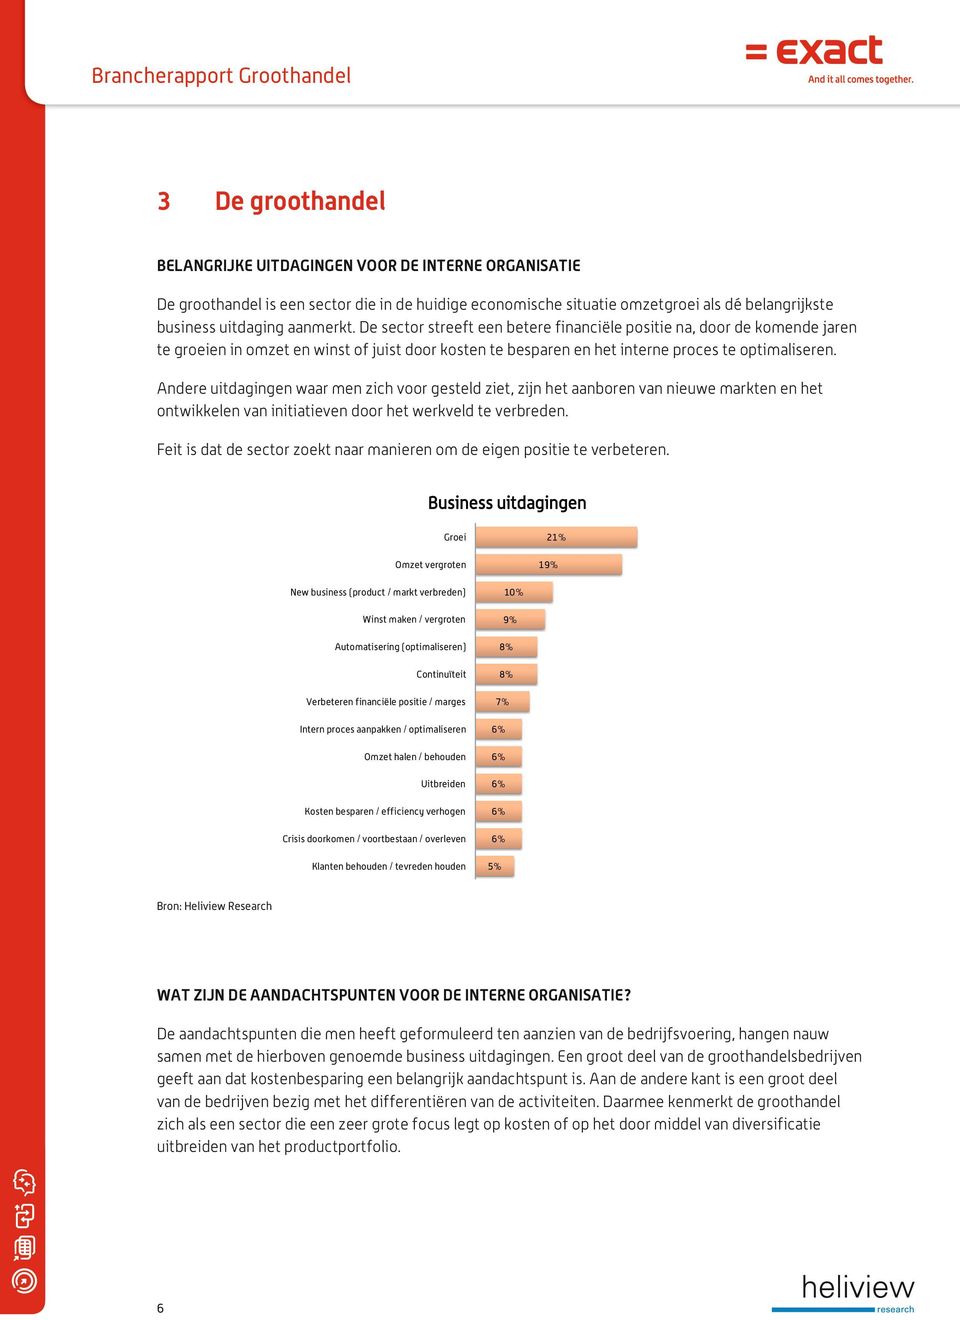 Andere uitdagingen waar men zich voor gesteld ziet, zijn het aanboren van nieuwe markten en het ontwikkelen van initiatieven door het werkveld te verbreden.